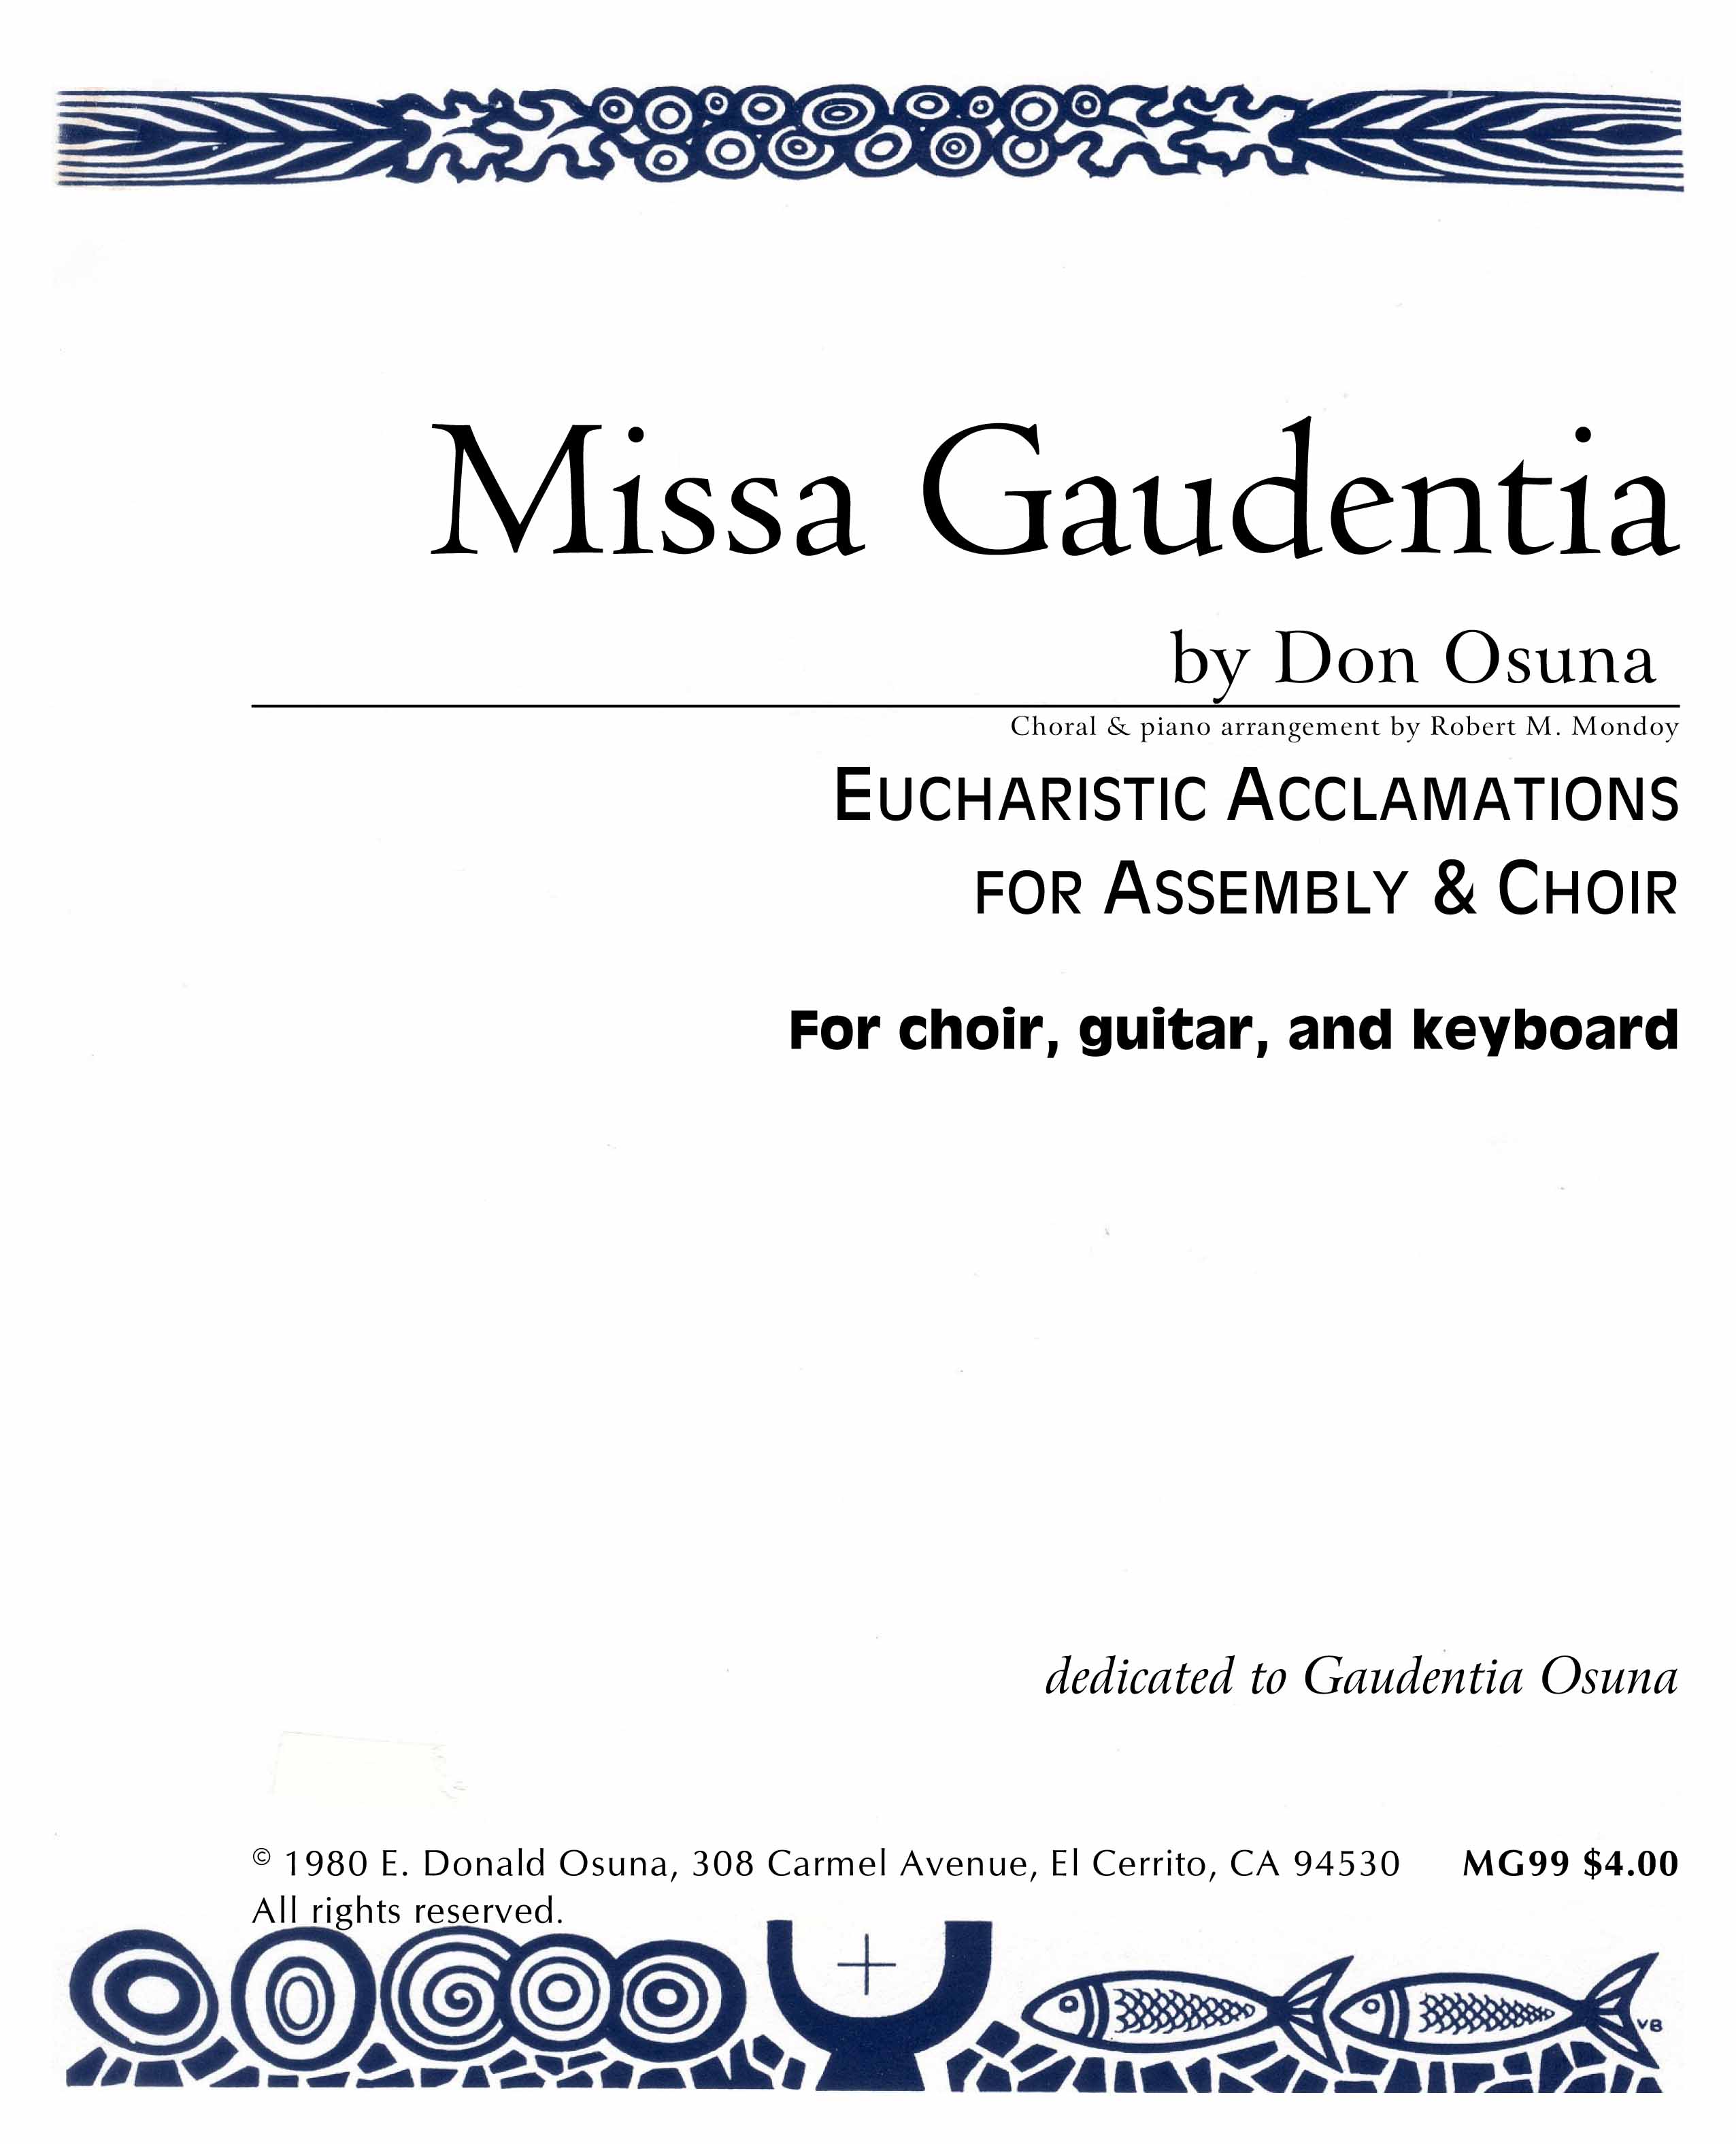 Missa Gaudentia